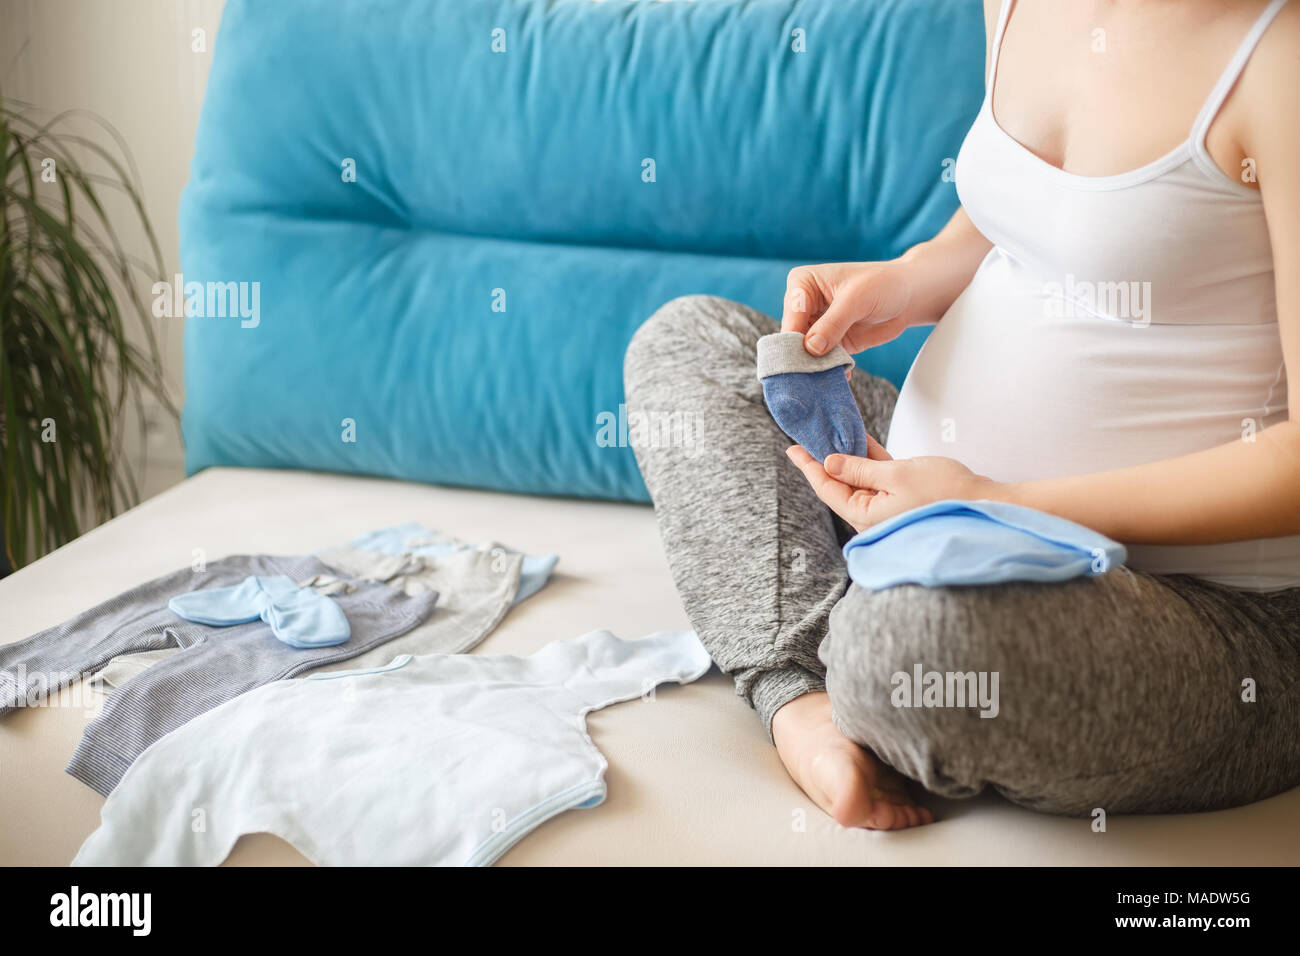 Nahaufnahme der schwangeren Frau Vorbereitung Baby Kleidung. Die werdende Mutter mit Kleidung für das Neugeborene. Schwangerschaft, Menschen, Erwartung von baby Konzept Stockfoto